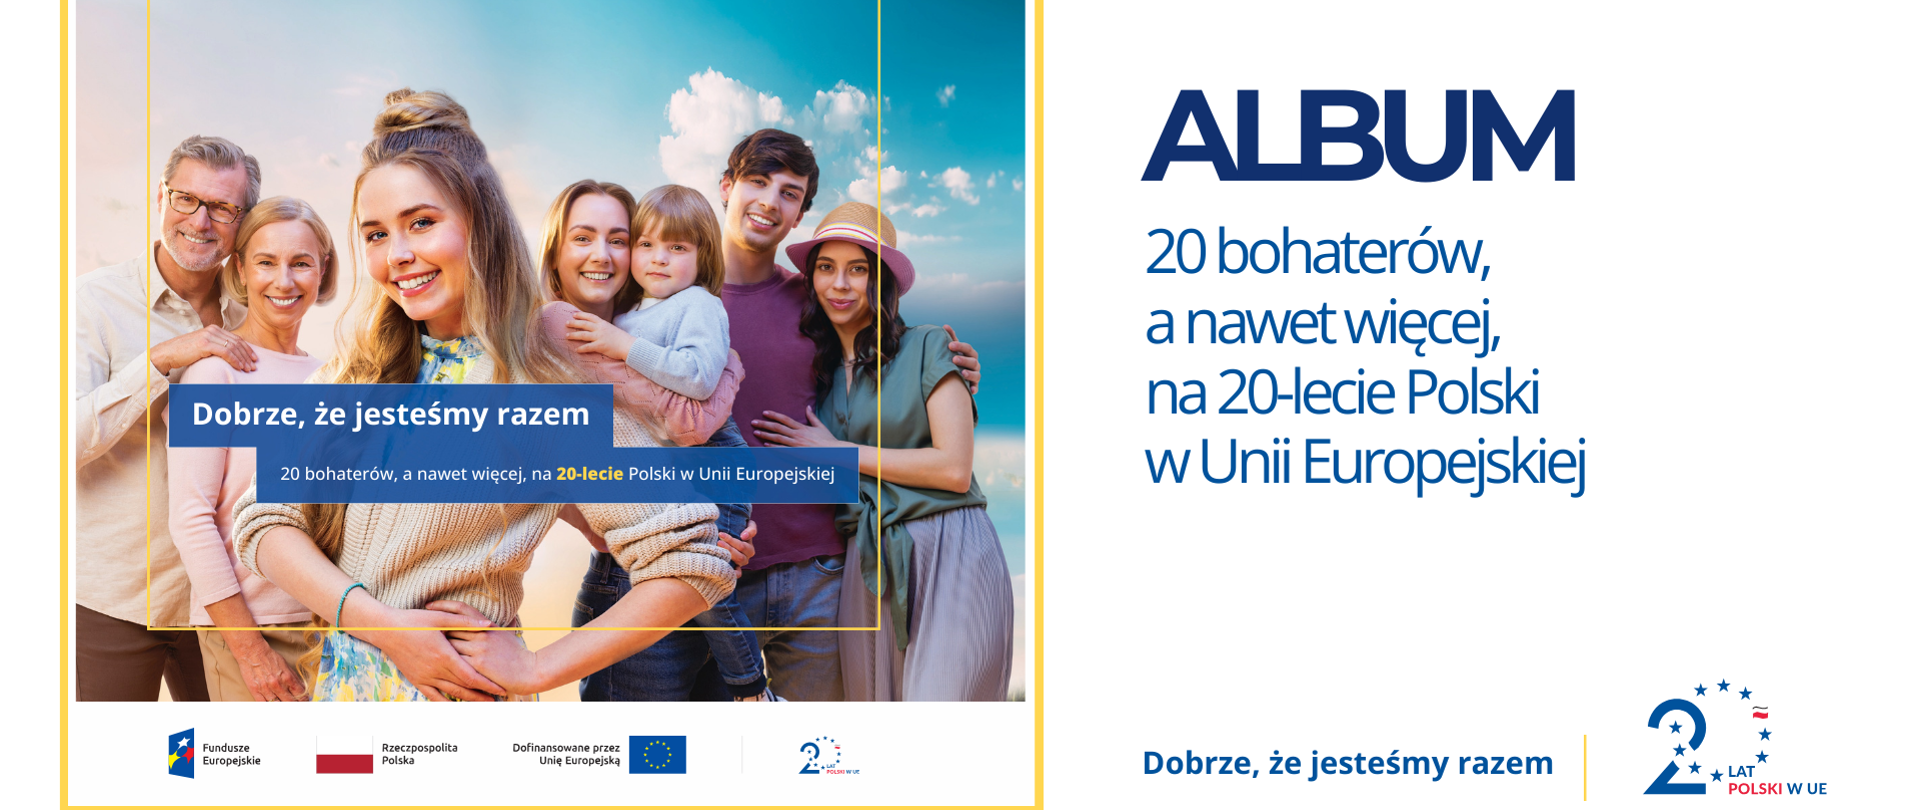 Polecamy album z okazji 20-lecia Polski w UE